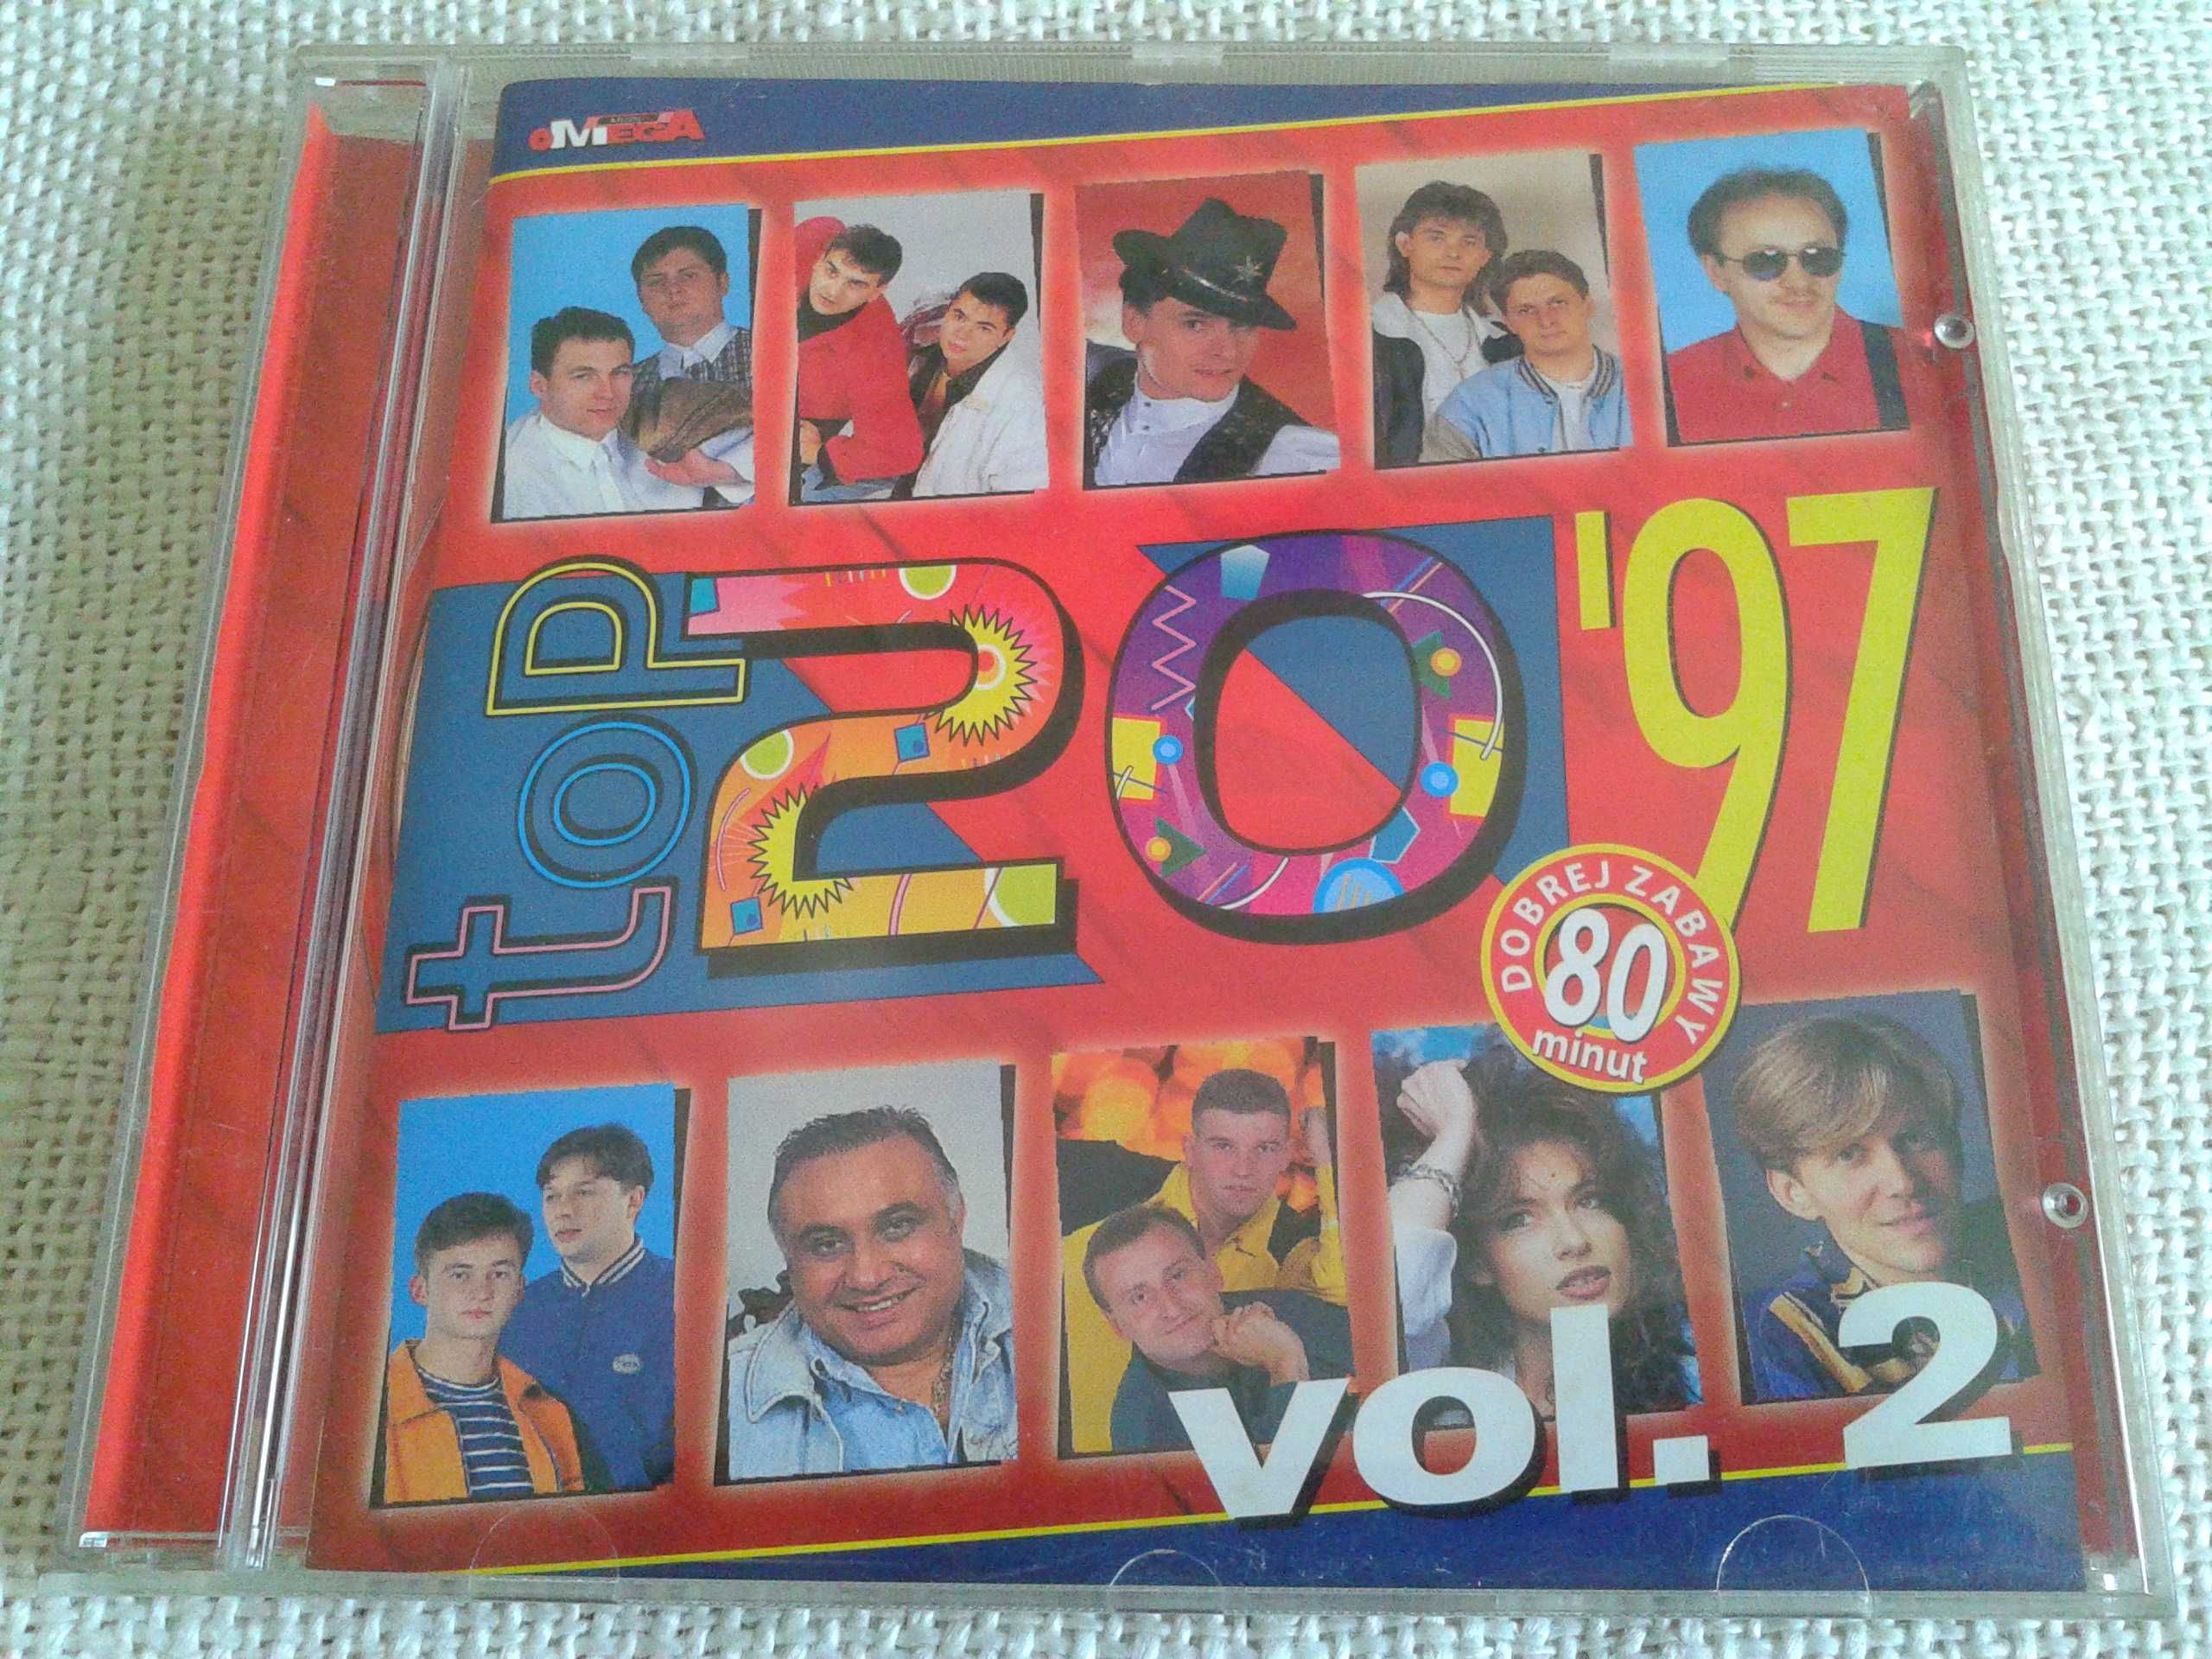 Top 20 '97 Vol. 3   CD